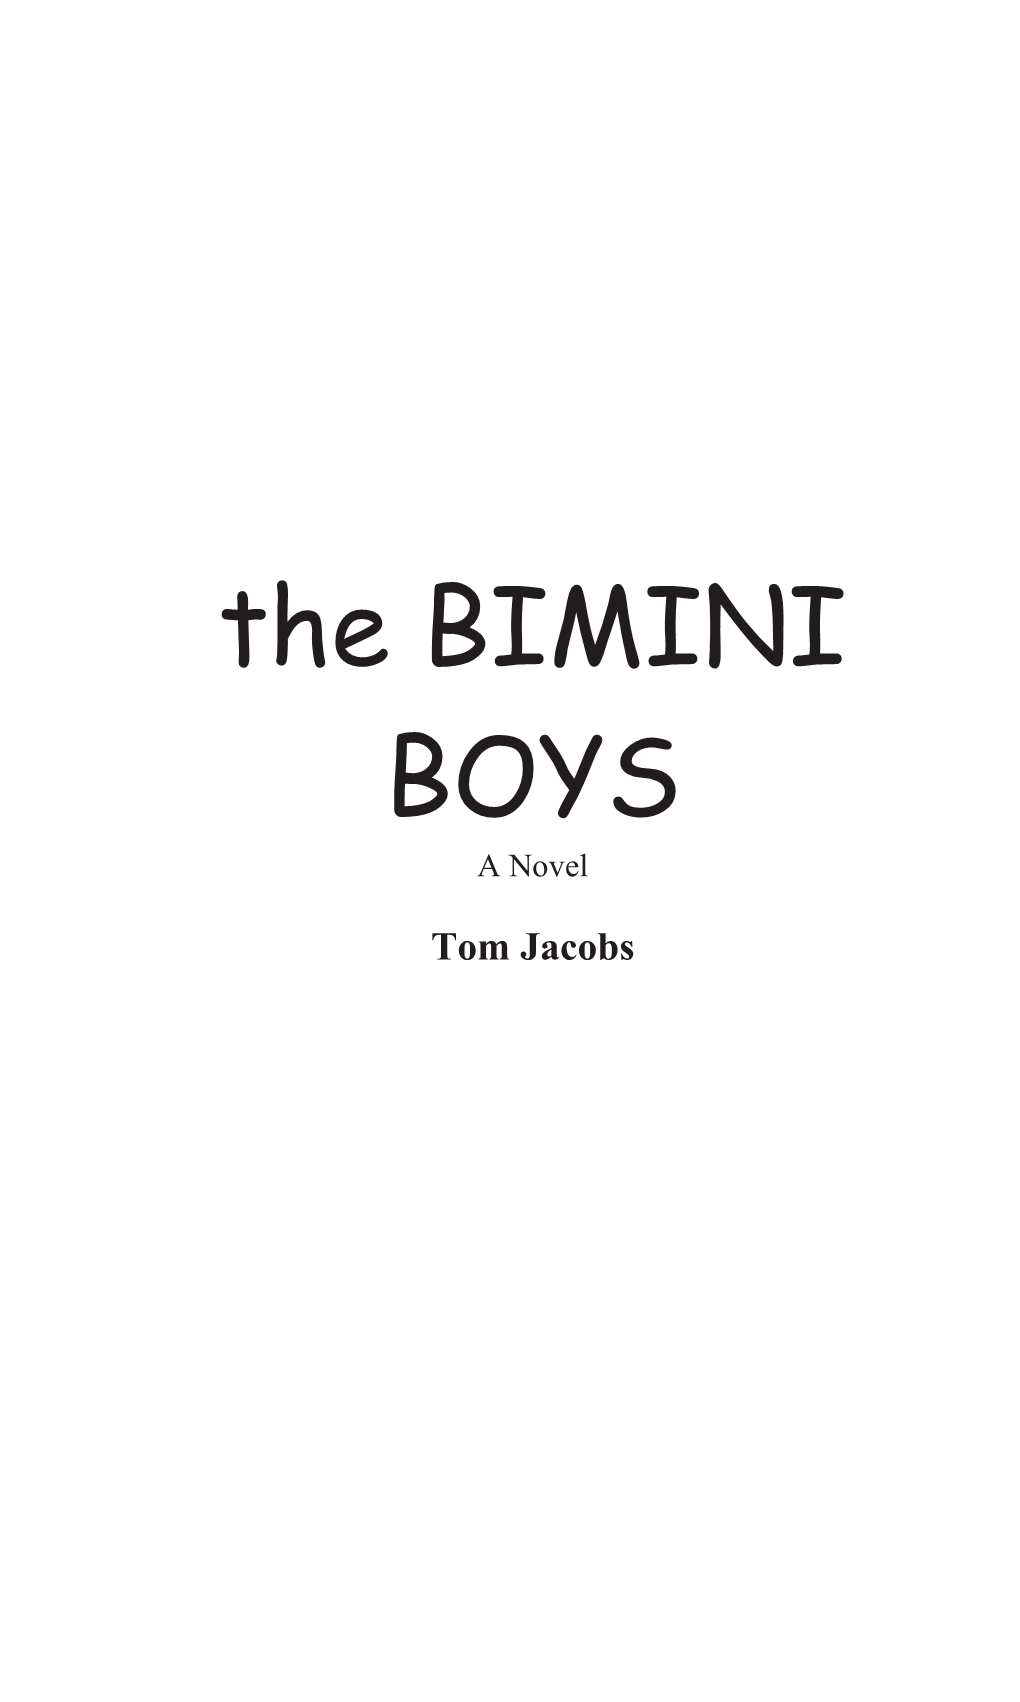 The BIMINI BOYS